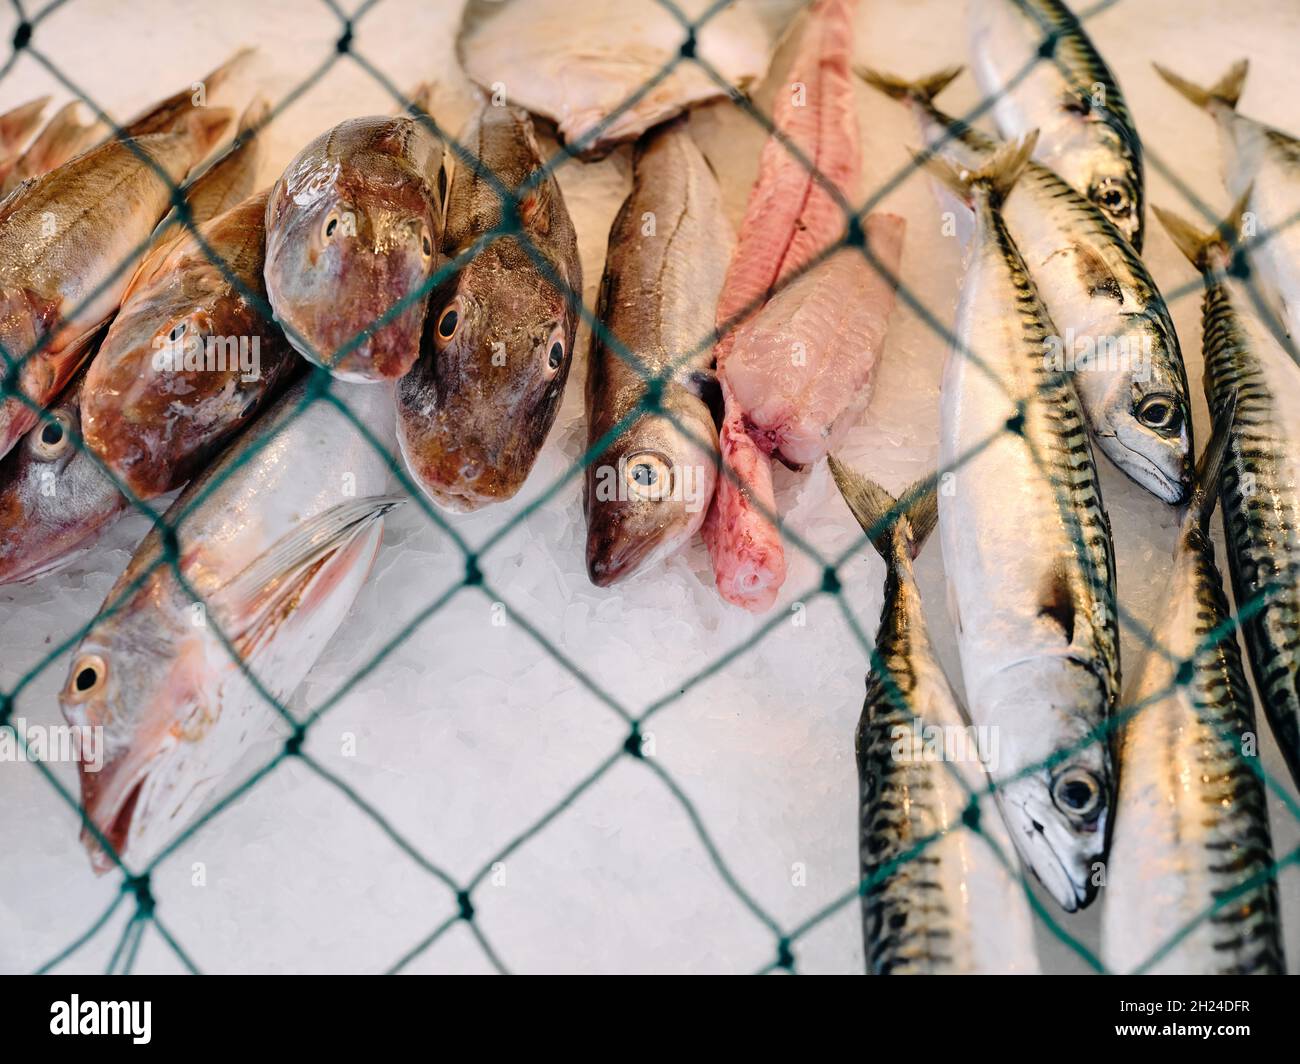 Poisson fraîchement pêché exposé sur le comptoir d'une cabane à poissons frais à Hastings avec un filet de pêche à protéger contre les goélands - vente de poisson frais - yeux de poissons Banque D'Images